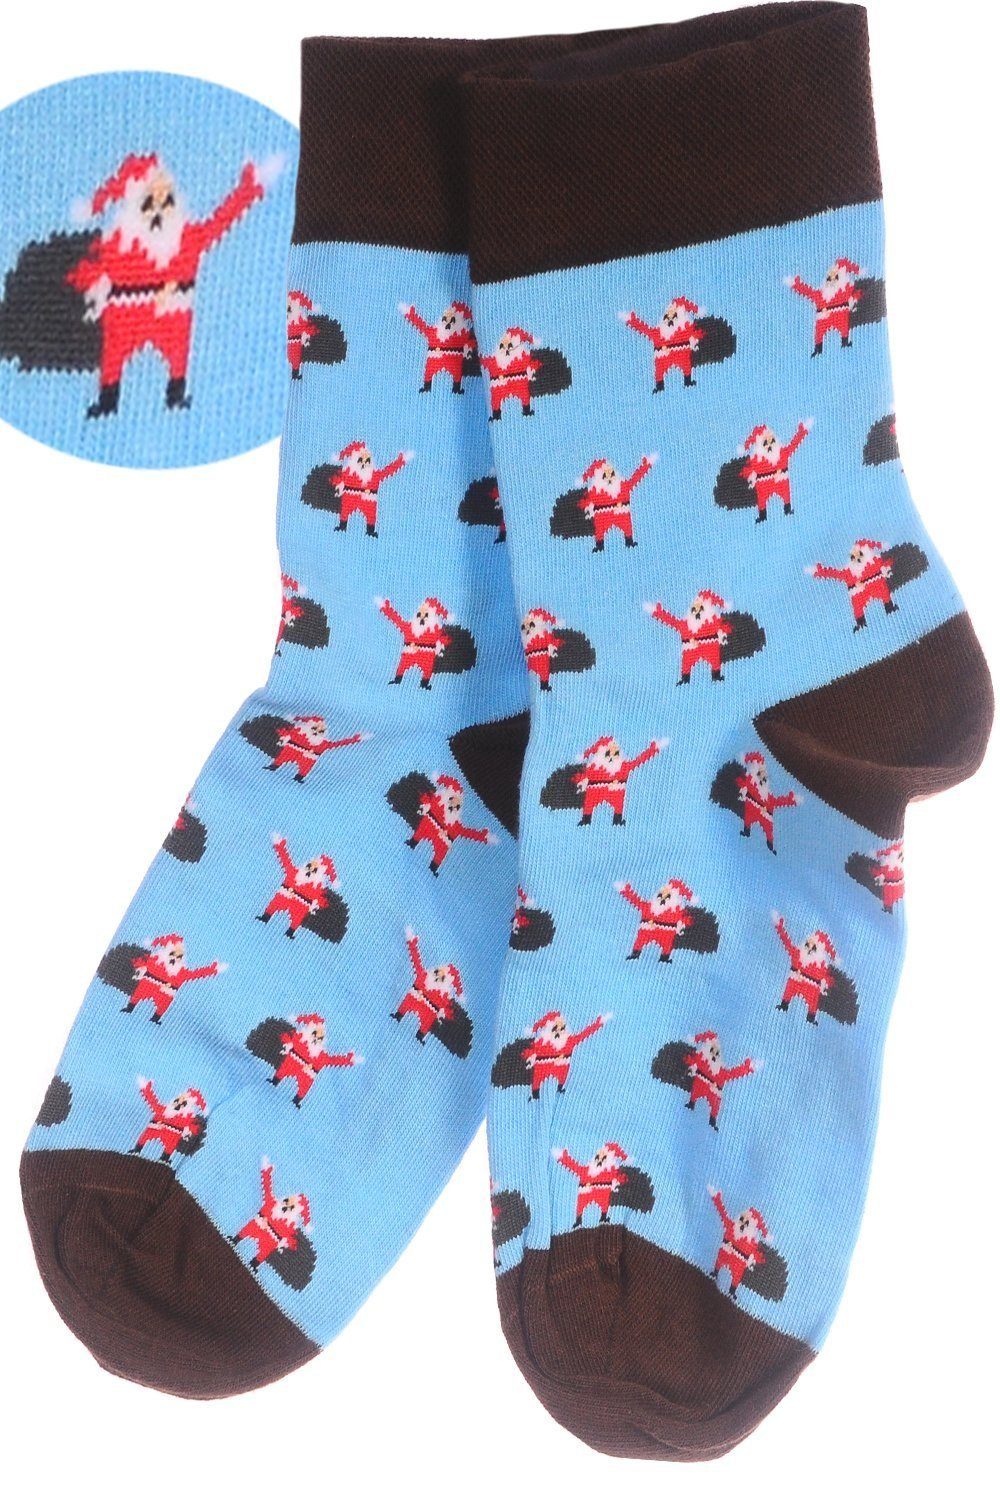 Socken 1 Martinex 38 bunt, Hellblau_Santa 46 42 weihnachtlich schön, Strümpfe 43 35 Weihnachtssocken Socken 39 Paar